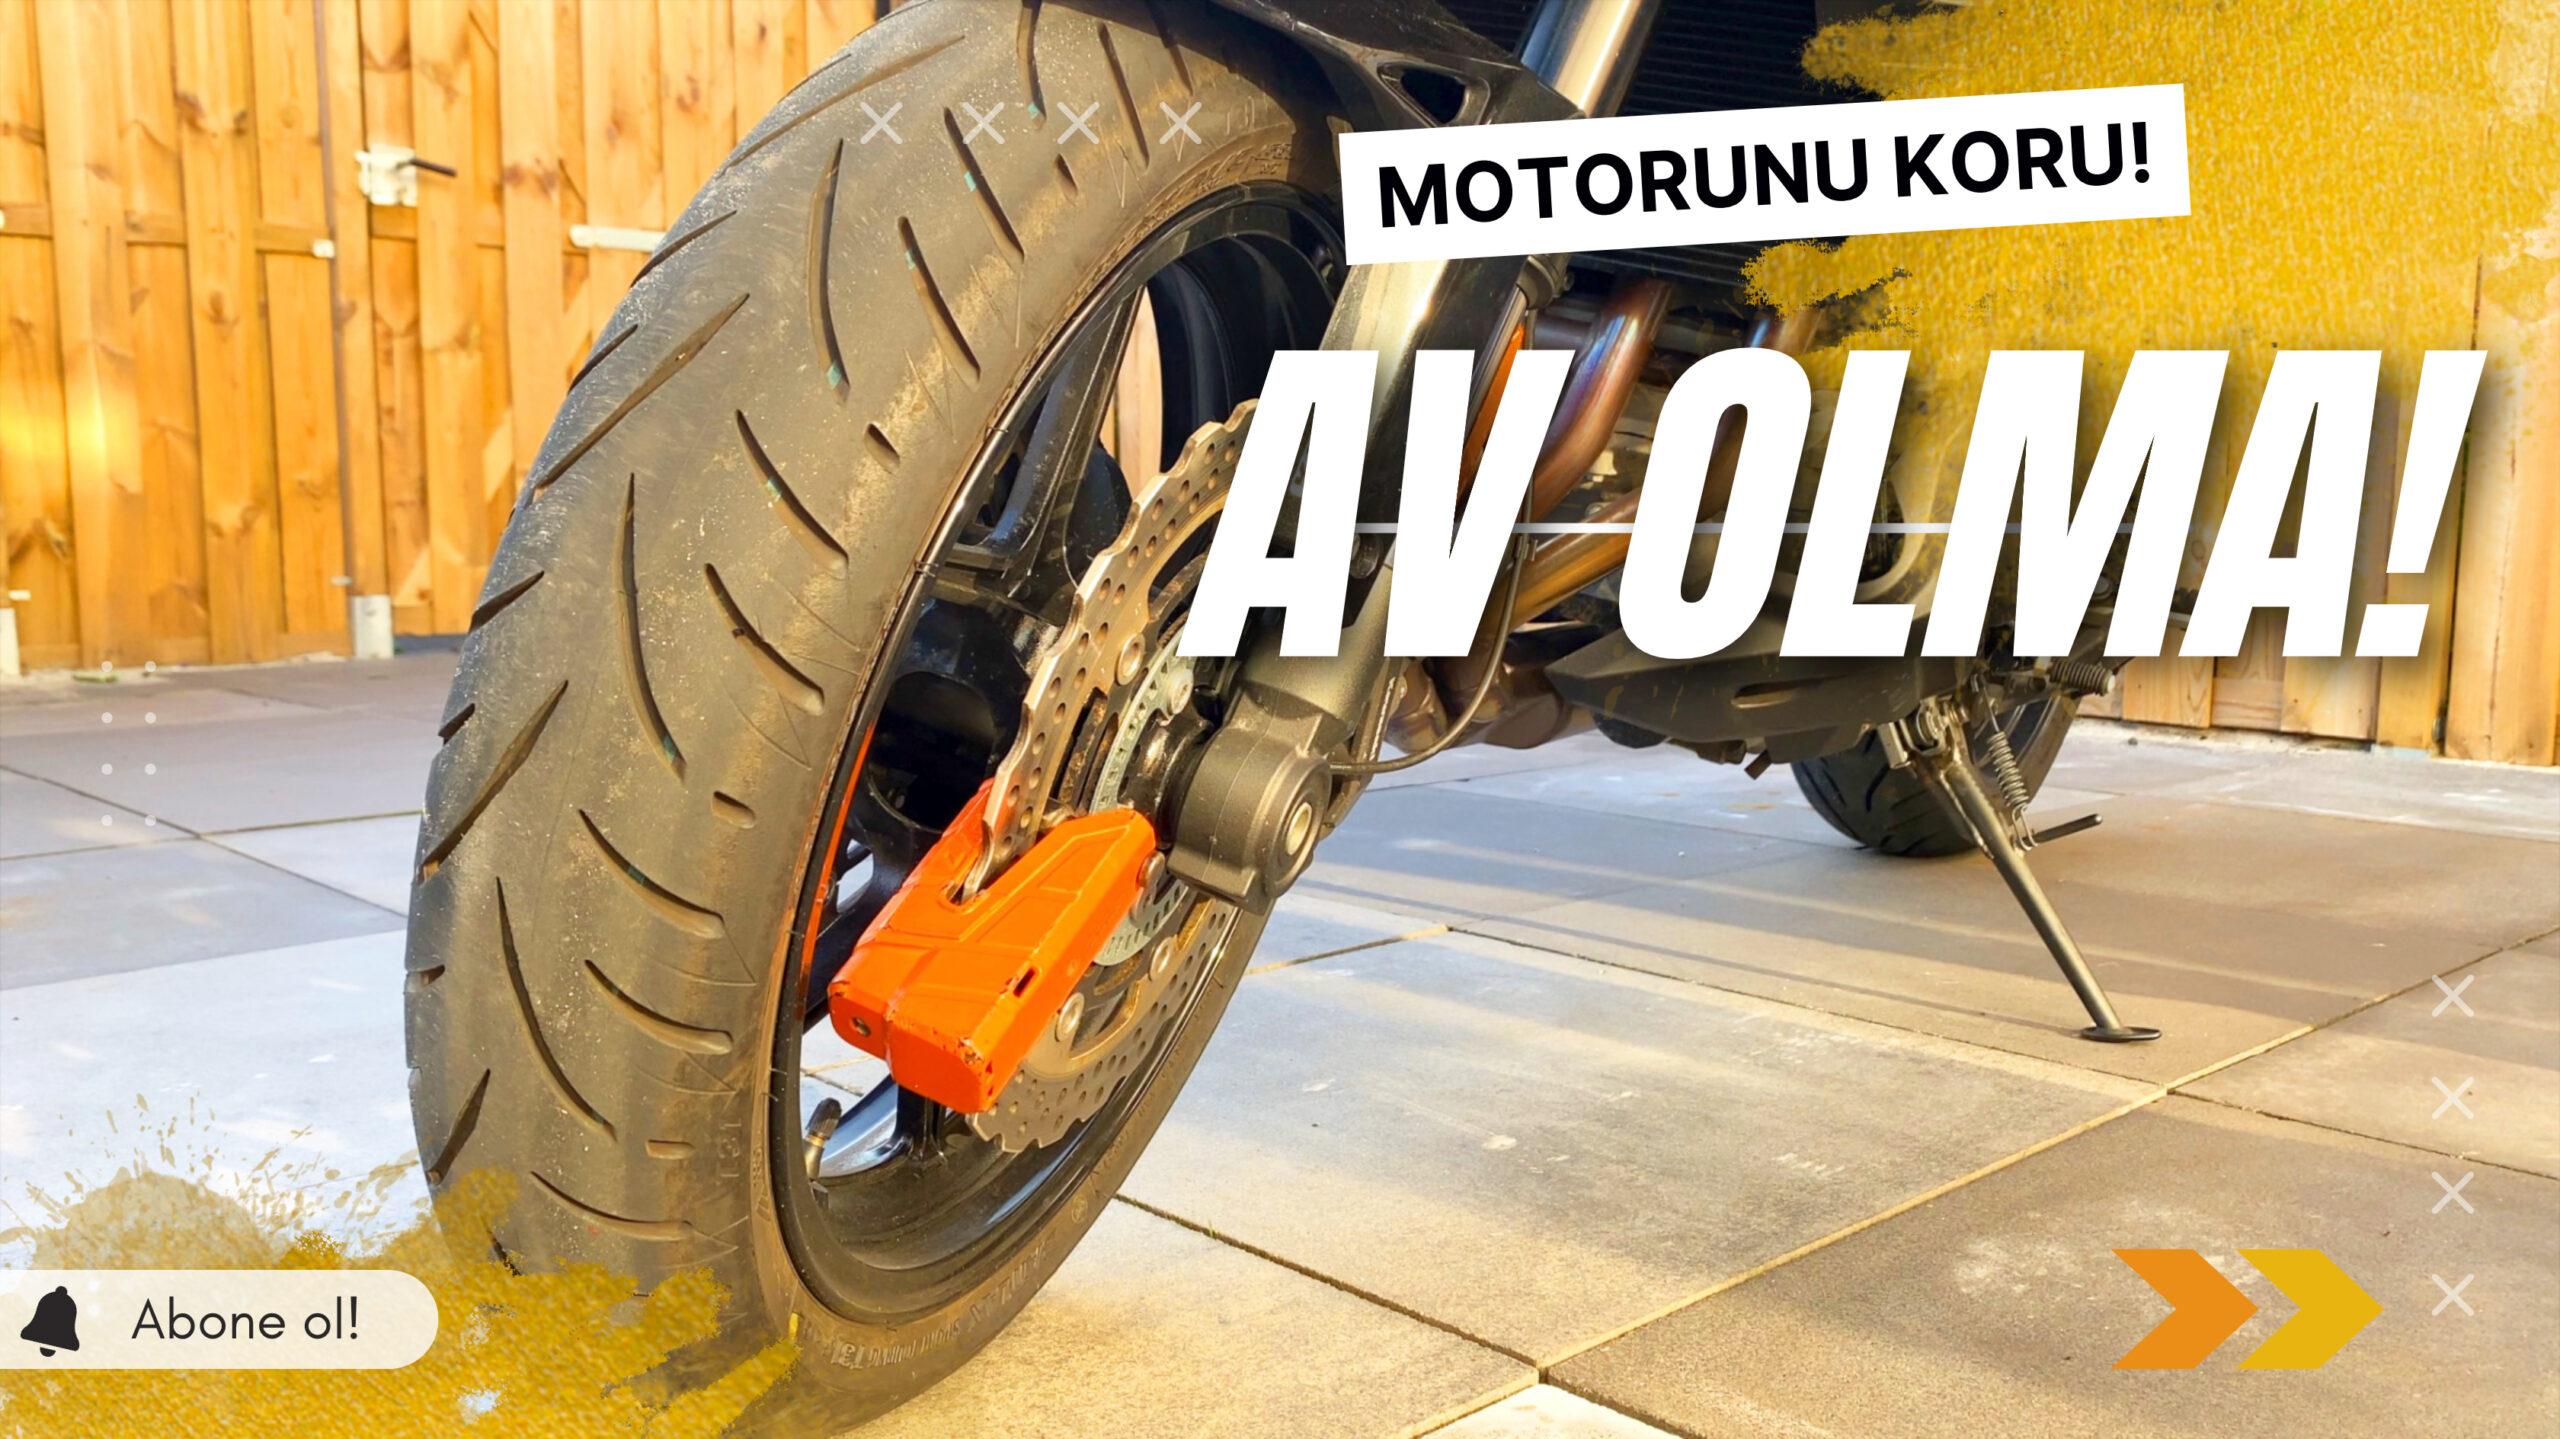 AV OLMA! – Motosiklet Hırsızlarına Karşı Etkili Önlemler ve İpuçları